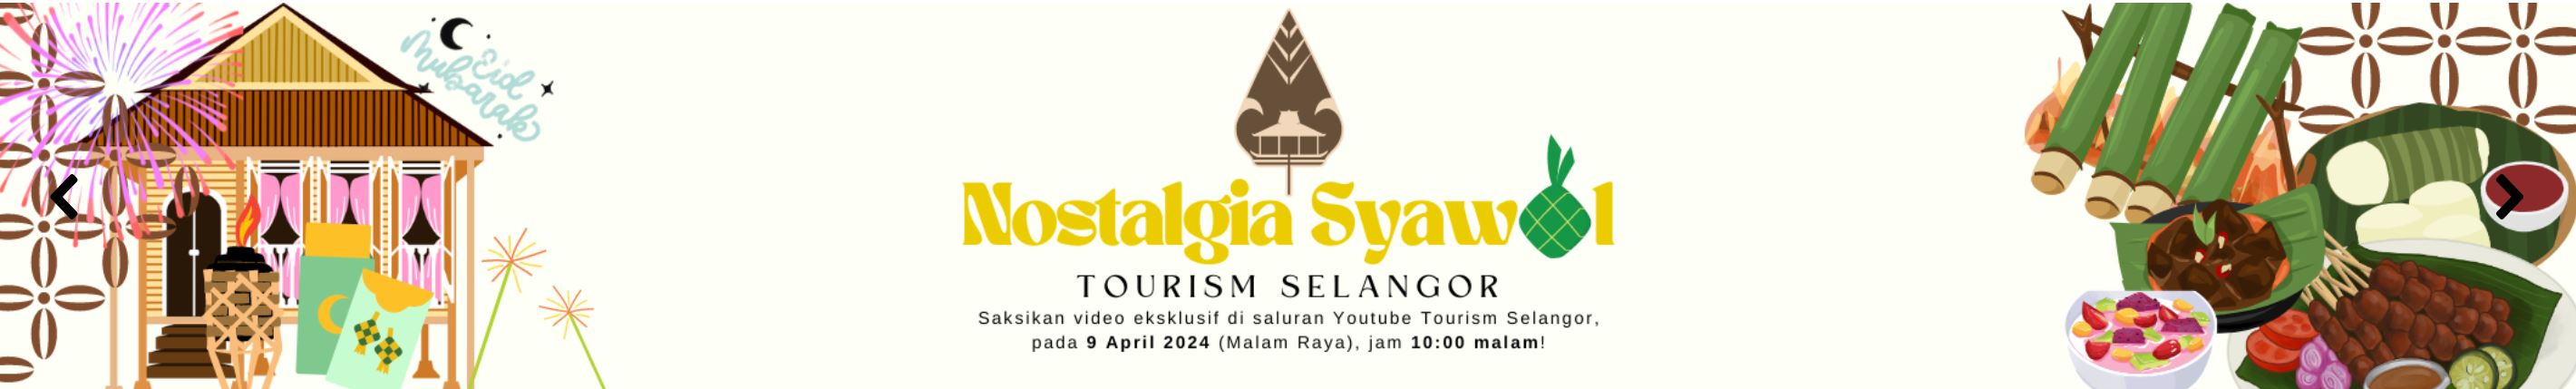 Tourism Selangor